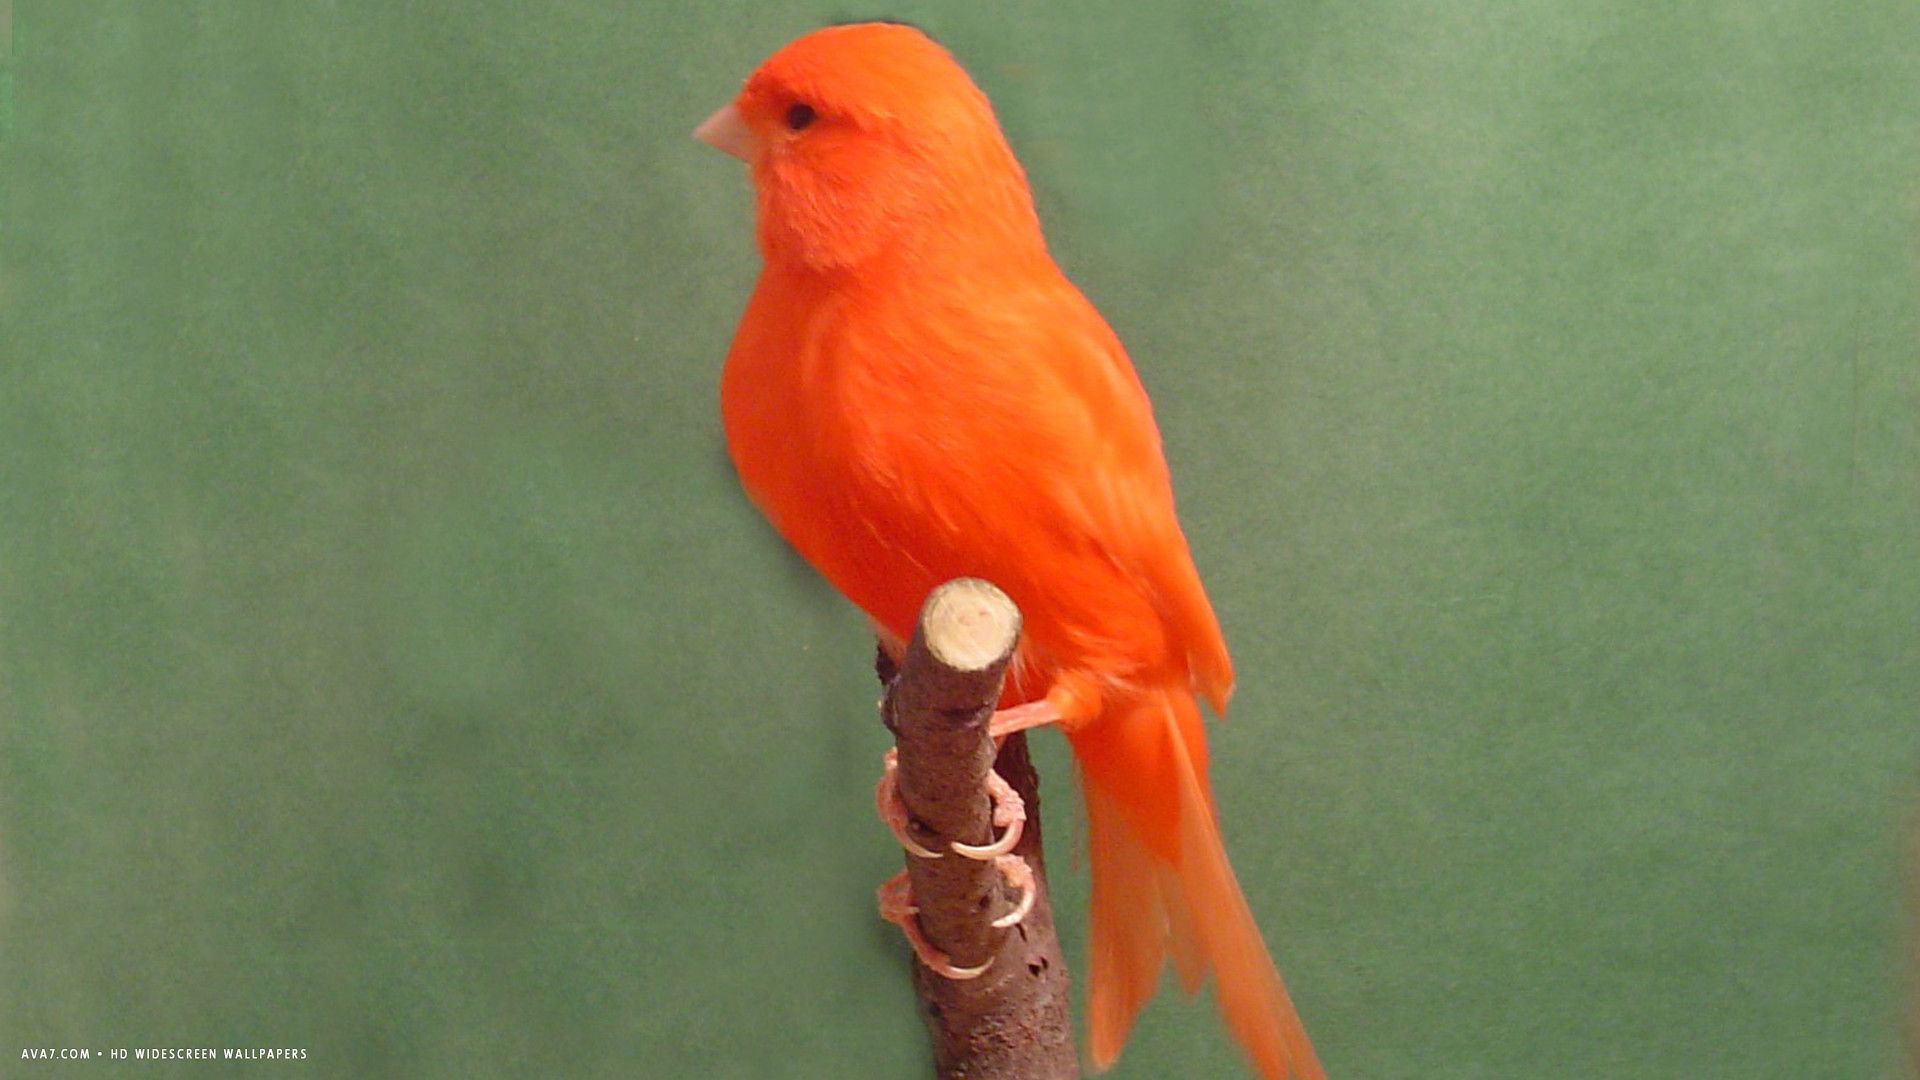 canary red factor bird hd widescreen wallpaper